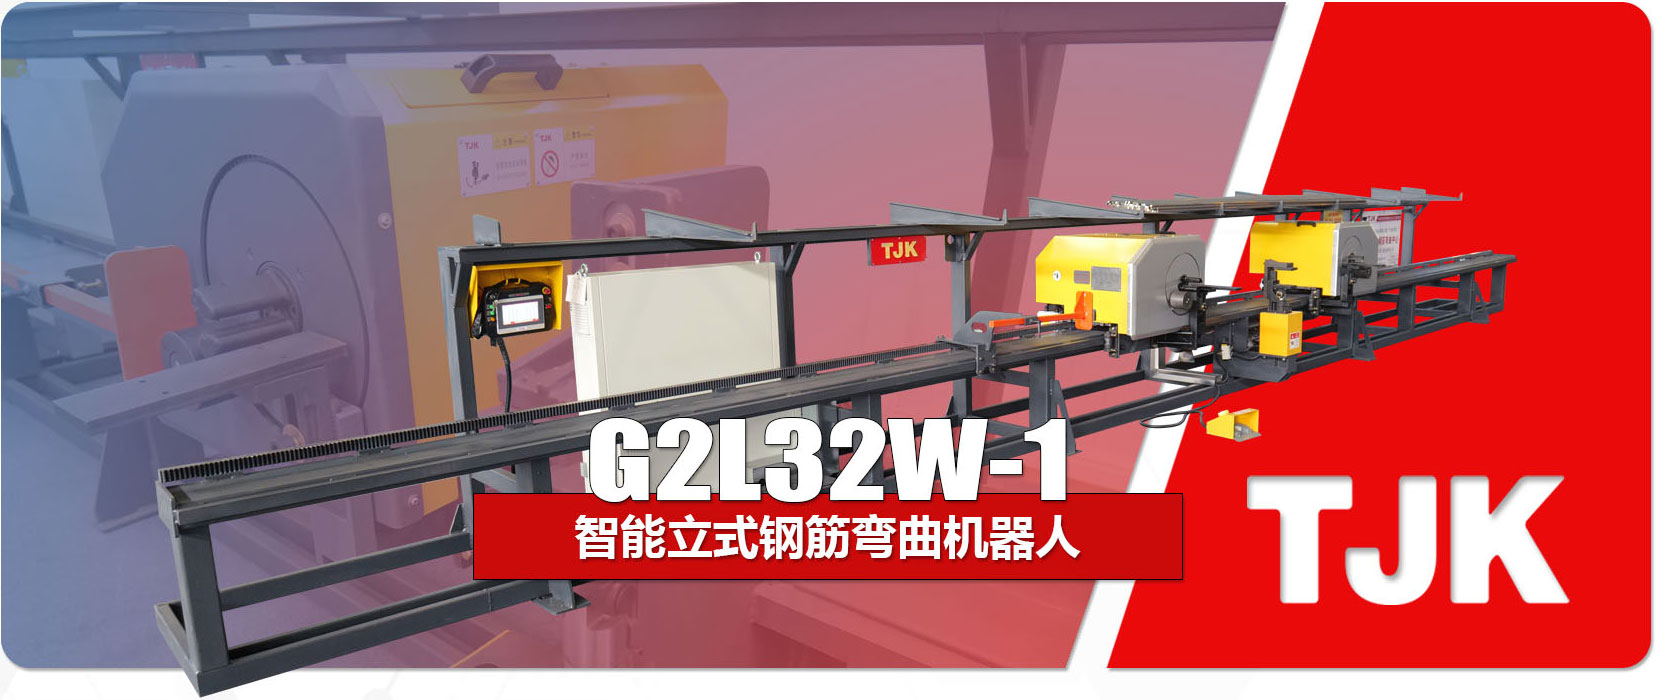 G2L32W-1产品特点_03.jpg